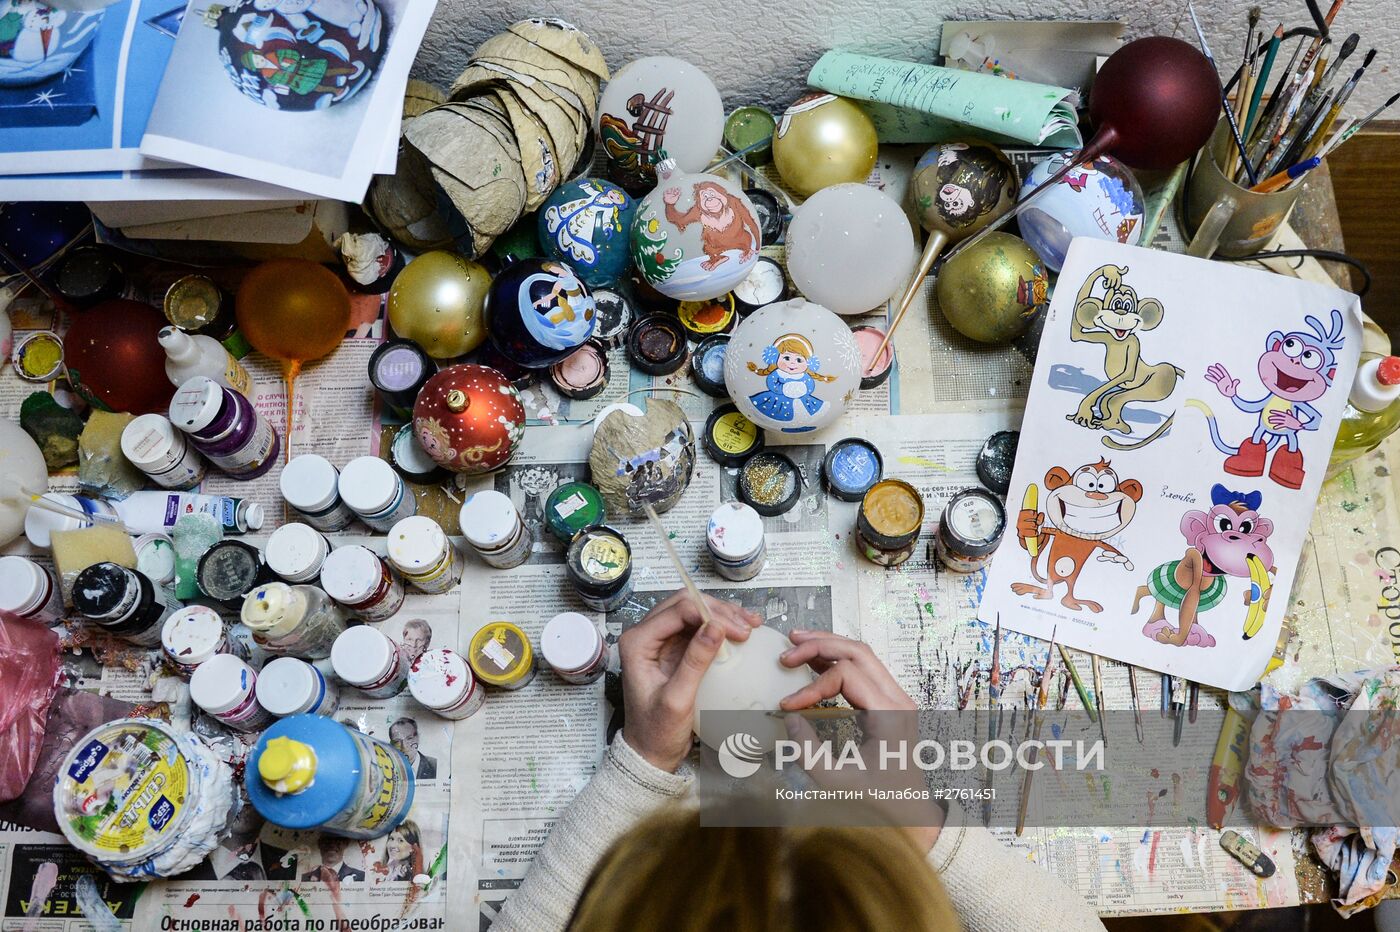 Изготовление елочных игрушек на предприятии "Шаг за шагом" в Новгородской области